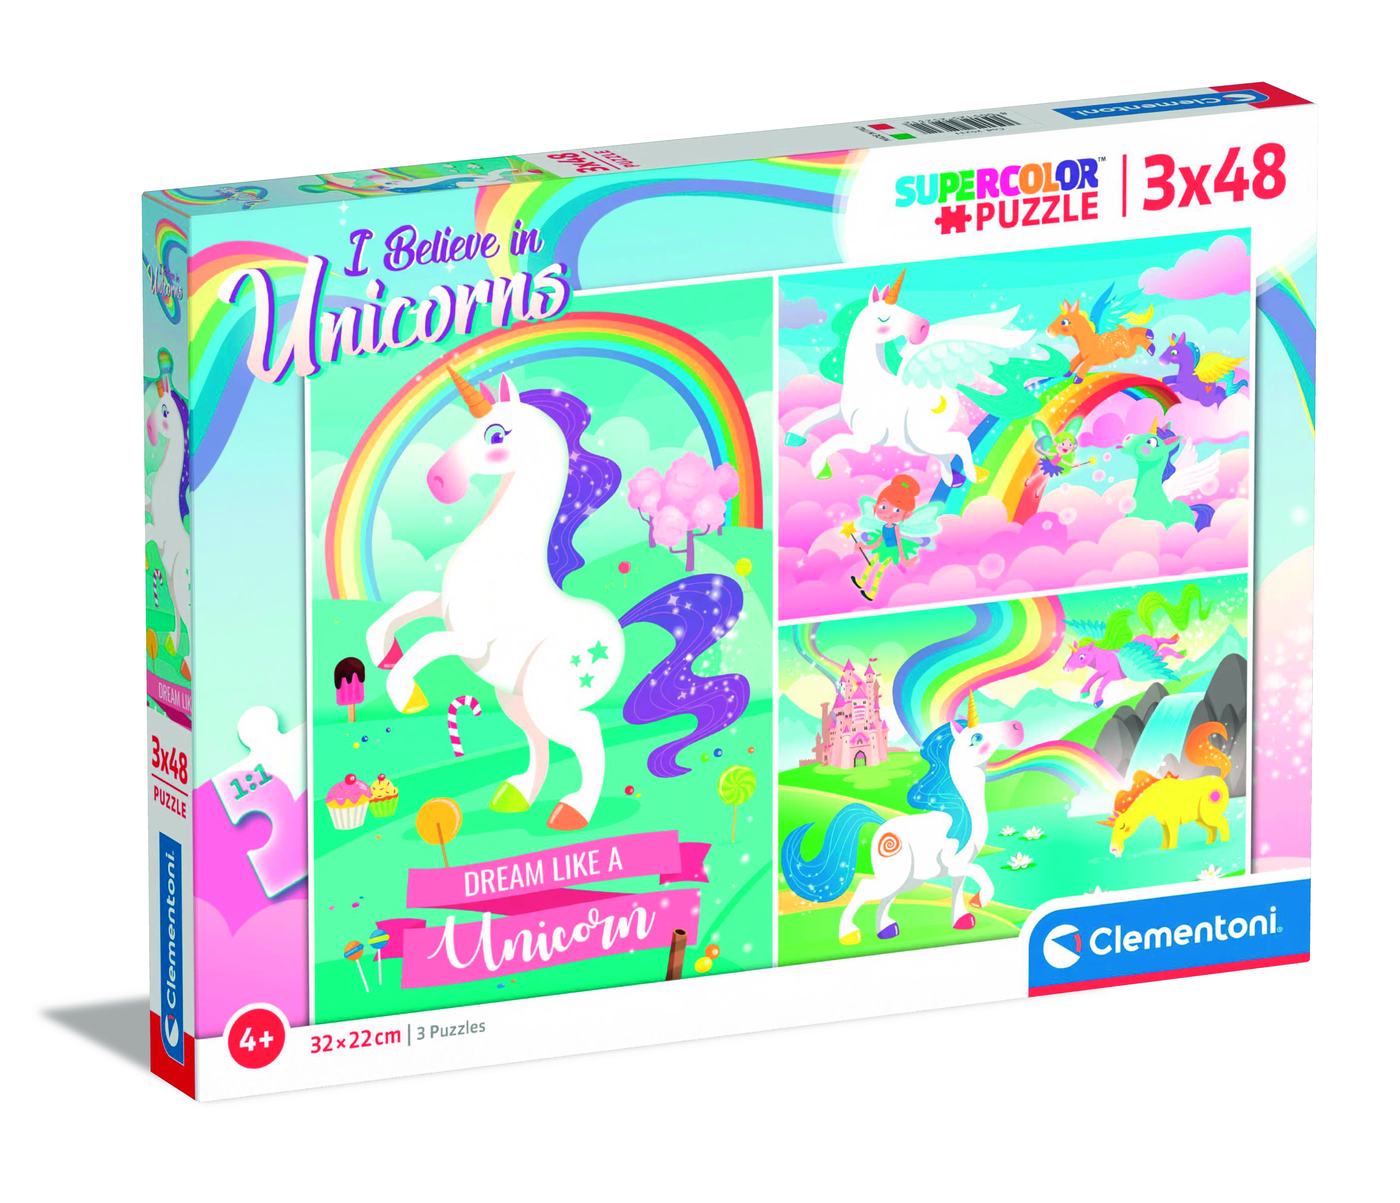 Kinderpuzzle Puzzle Kinder & Spiele Motiv I Believe in Unicorns 3x48 Teile Neu 